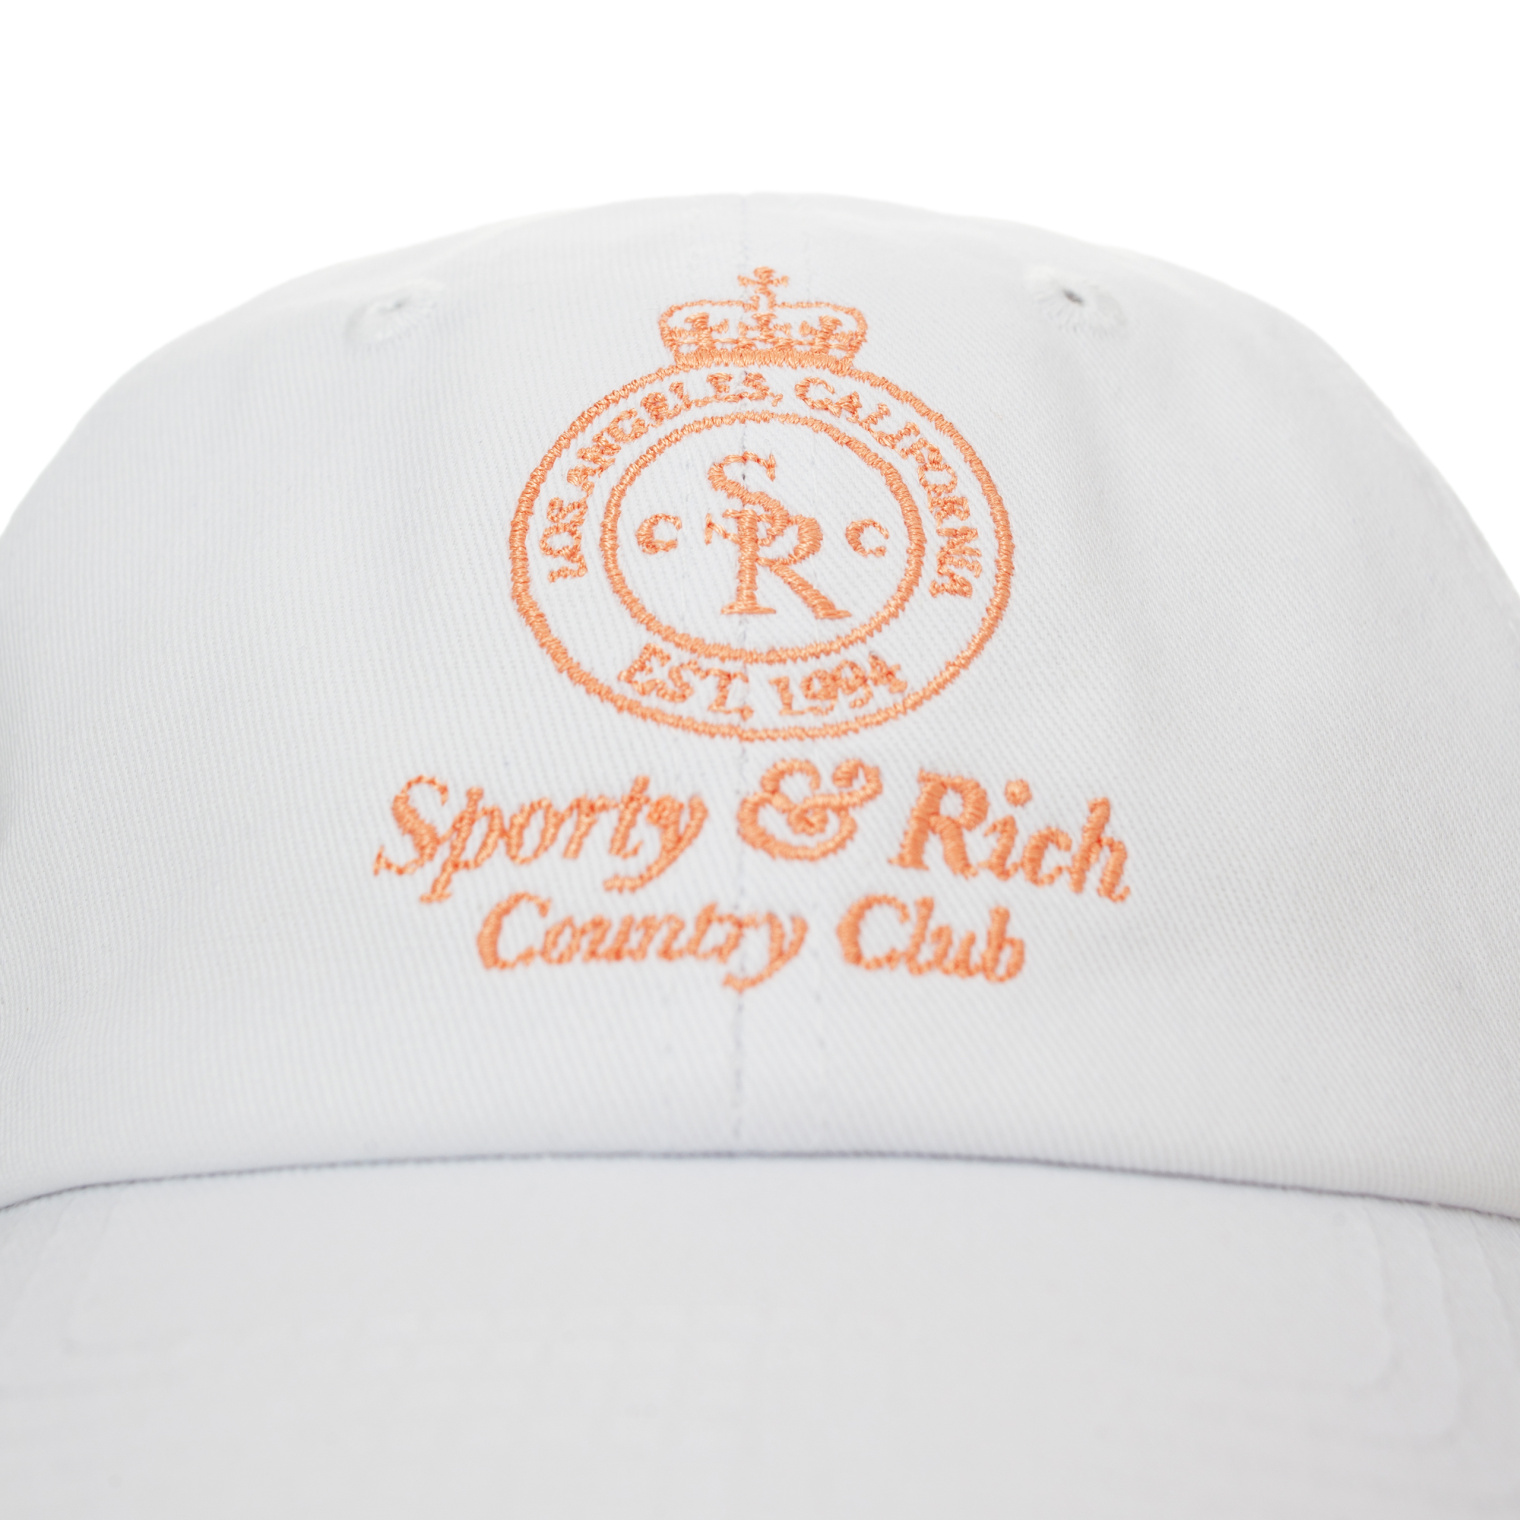 SPORTY & RICH Crown Cap